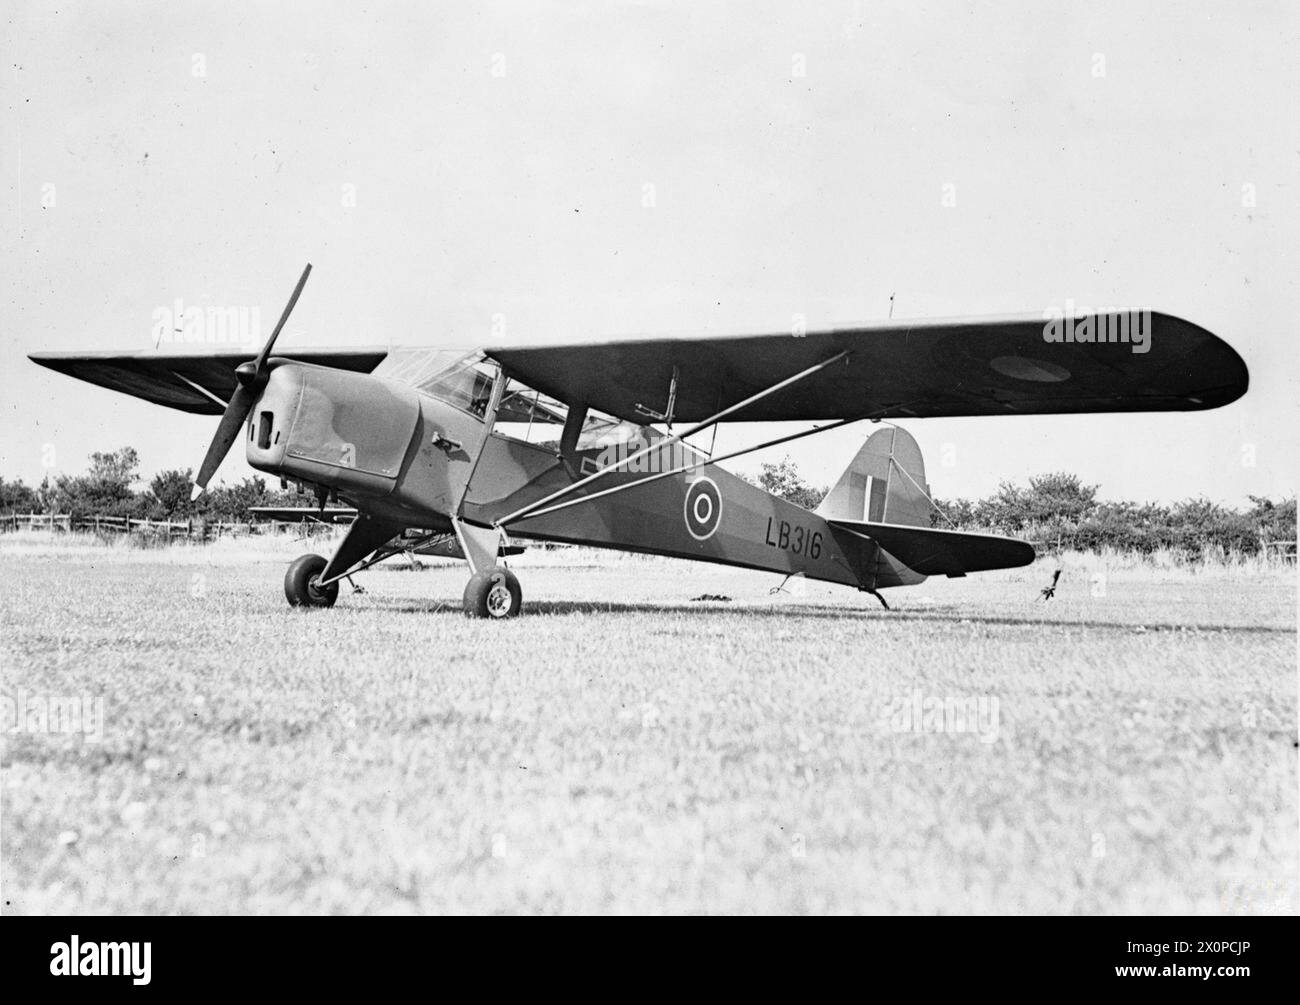 FLUGZEUGE DER ROYAL AIR FORCE 1939–1945: TAYLORCRAFT AUSTER. - Taylorcraft Auster AOP Mark I, LB316, in der Taylorcraft Auster Produktionsanlage in Rearsby, Leicestershire. LB316 hatte eine lange Dienstkarriere bei den Squadrons 654, 652 und 656 RAF, der Operational Training Unit 43 und der Elementary Fying Training School 22, bevor er im April 1945 zu einem Lehrflugzeug umgebaut wurde Stockfoto